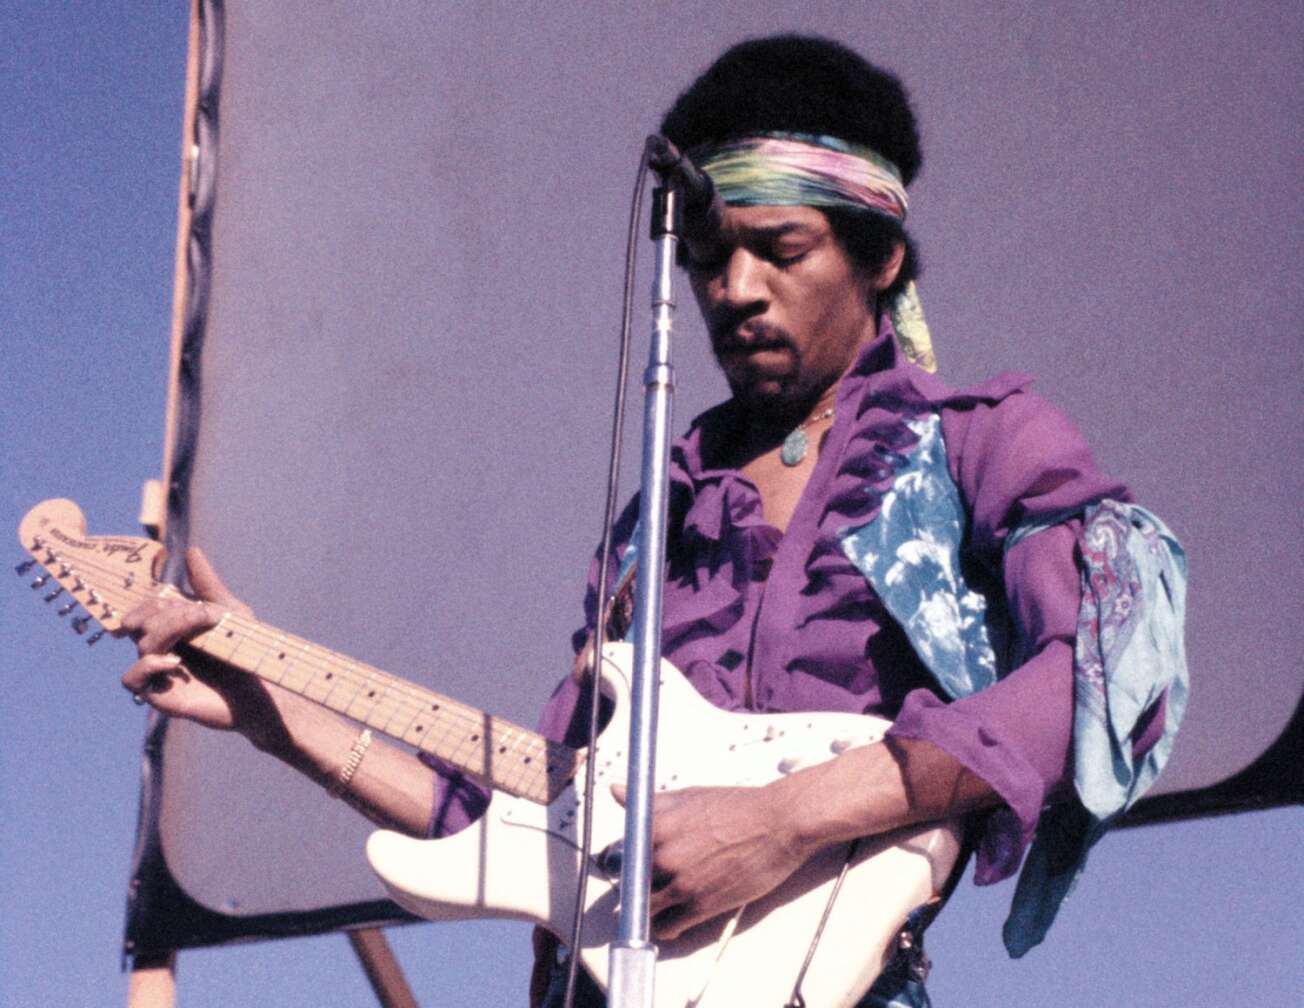 Jimi Hendrix bei einem Festival-Konzert in den späten 60ern